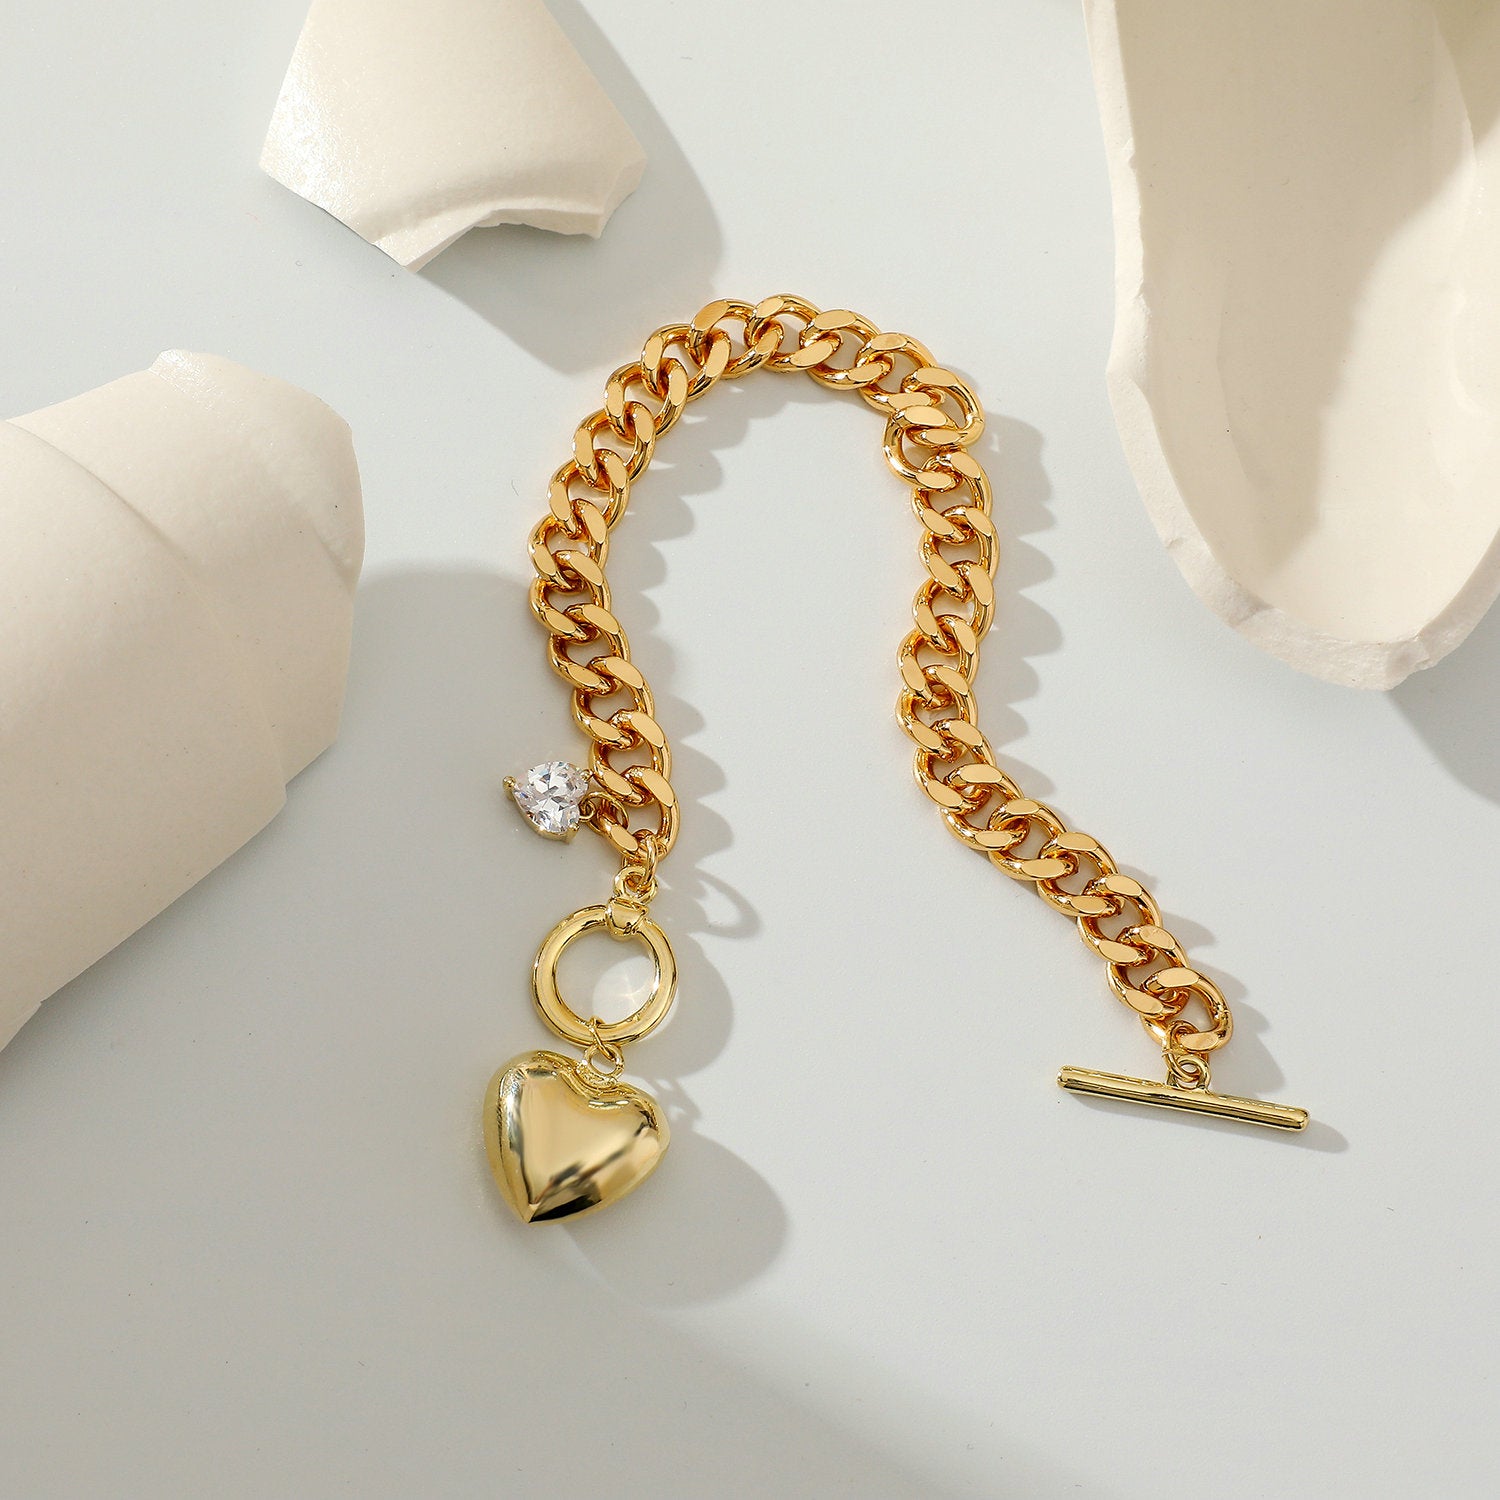 Heart Charm Bracelet - Gold / One Size - Women’s Jewelry - Bracelets - 3 - 2024